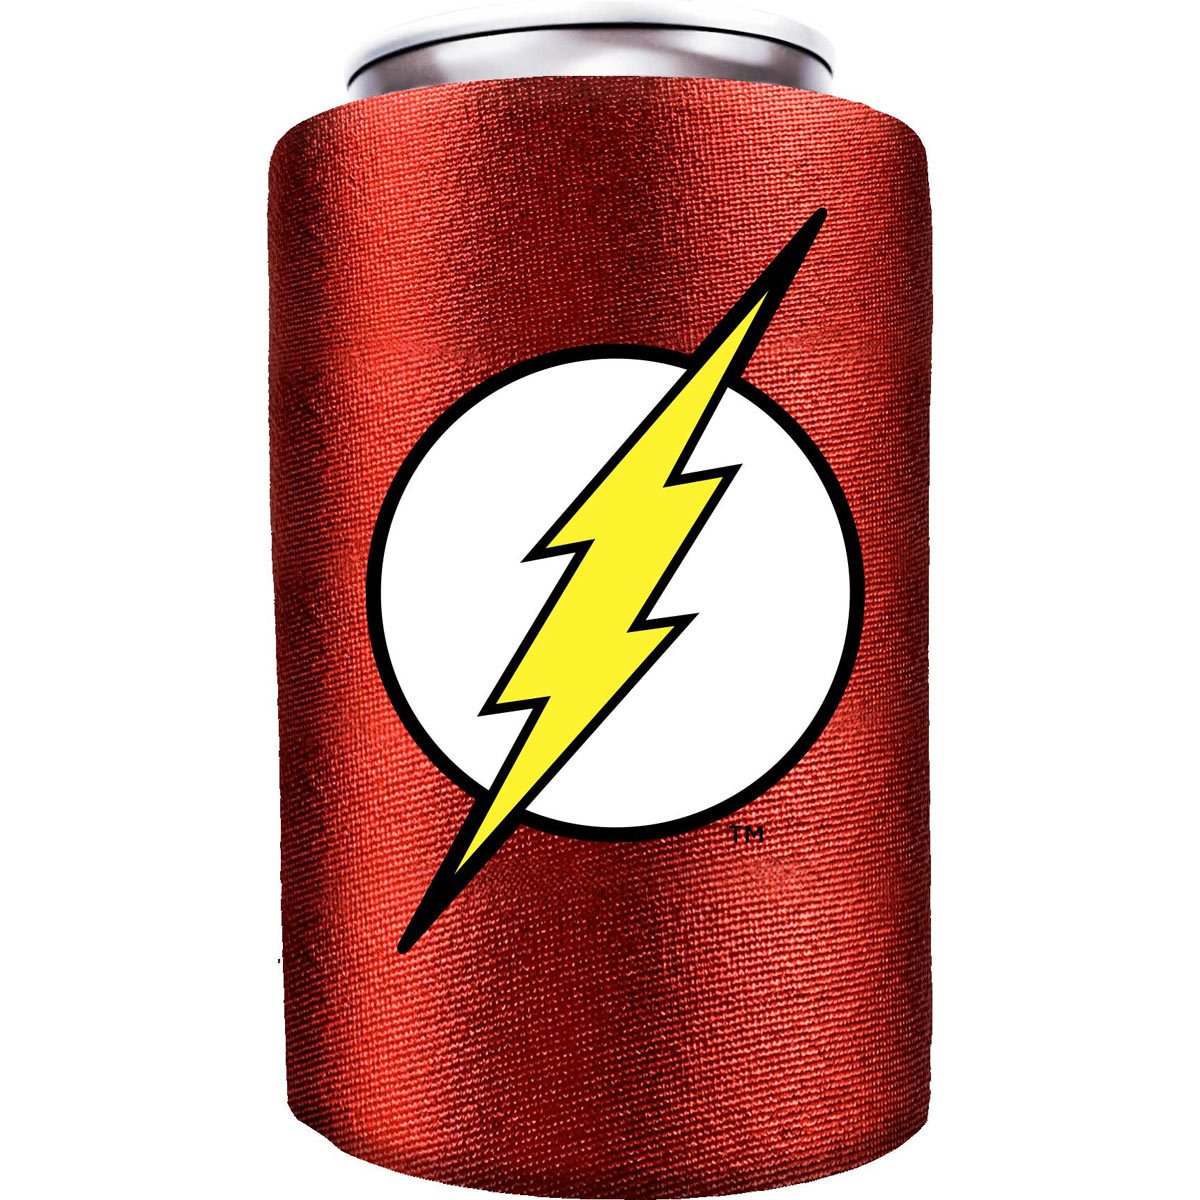 The Flash (DC Comics) Metallic Can Cooler